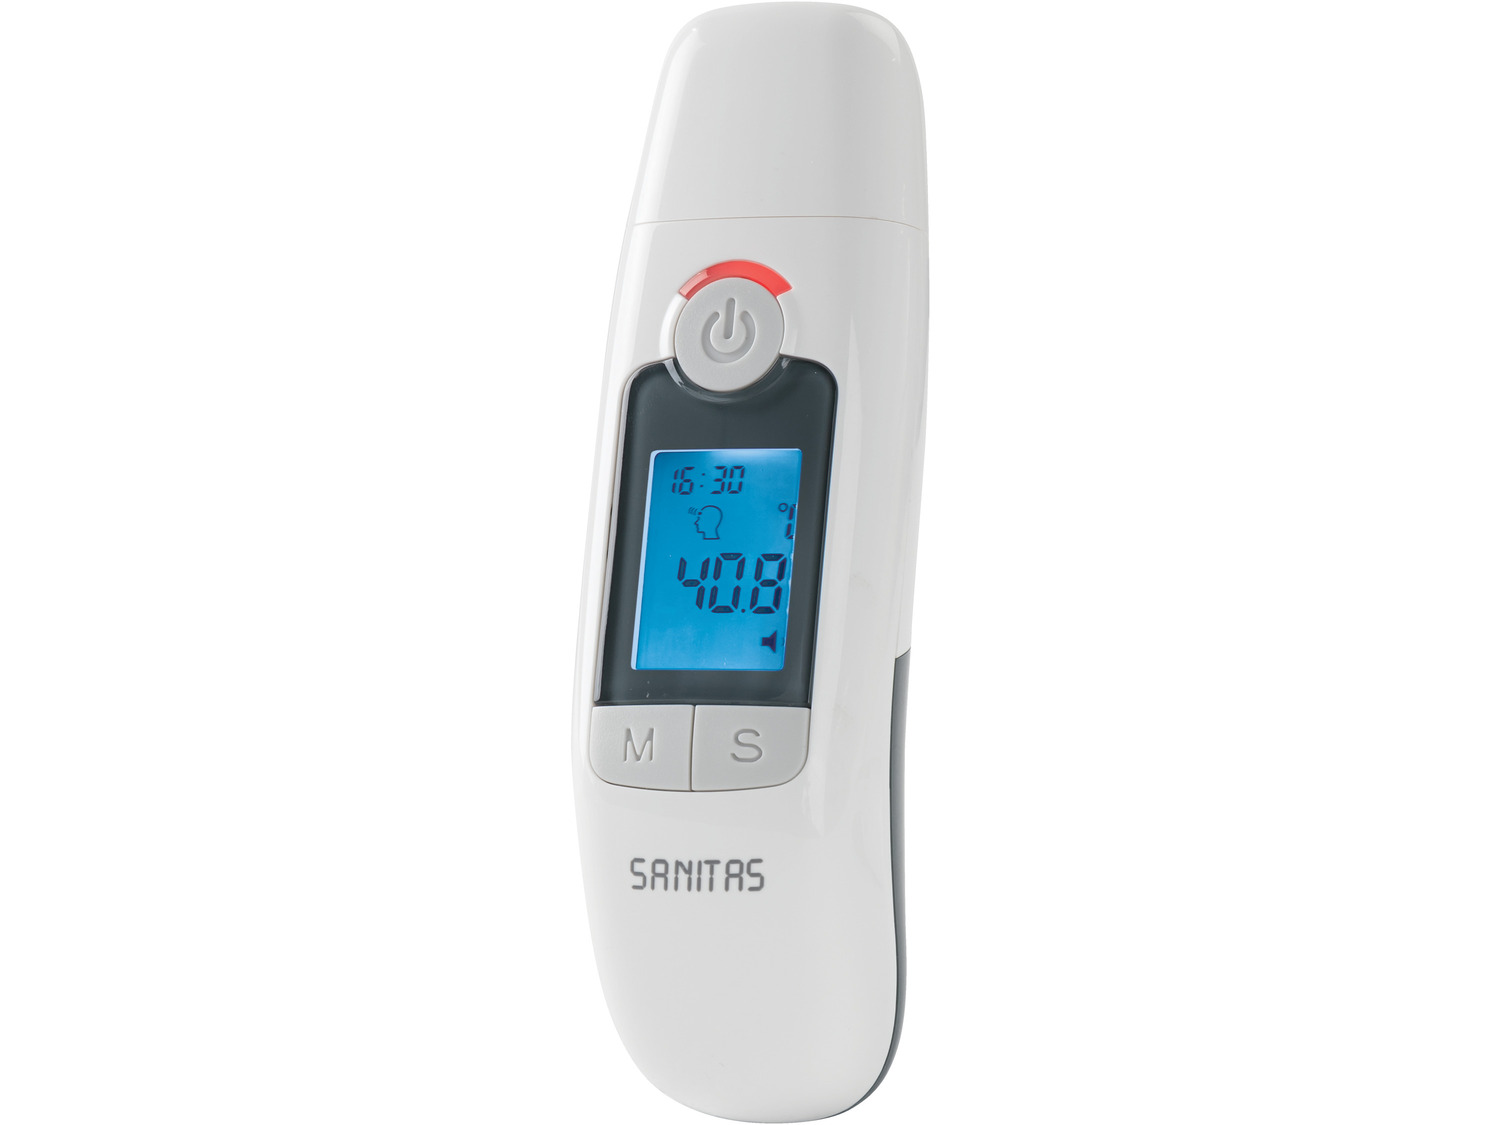 Termometr wielofunkcyjny Sanitas, cena 39,00 PLN 
- optyczny alarm w przypadku ...